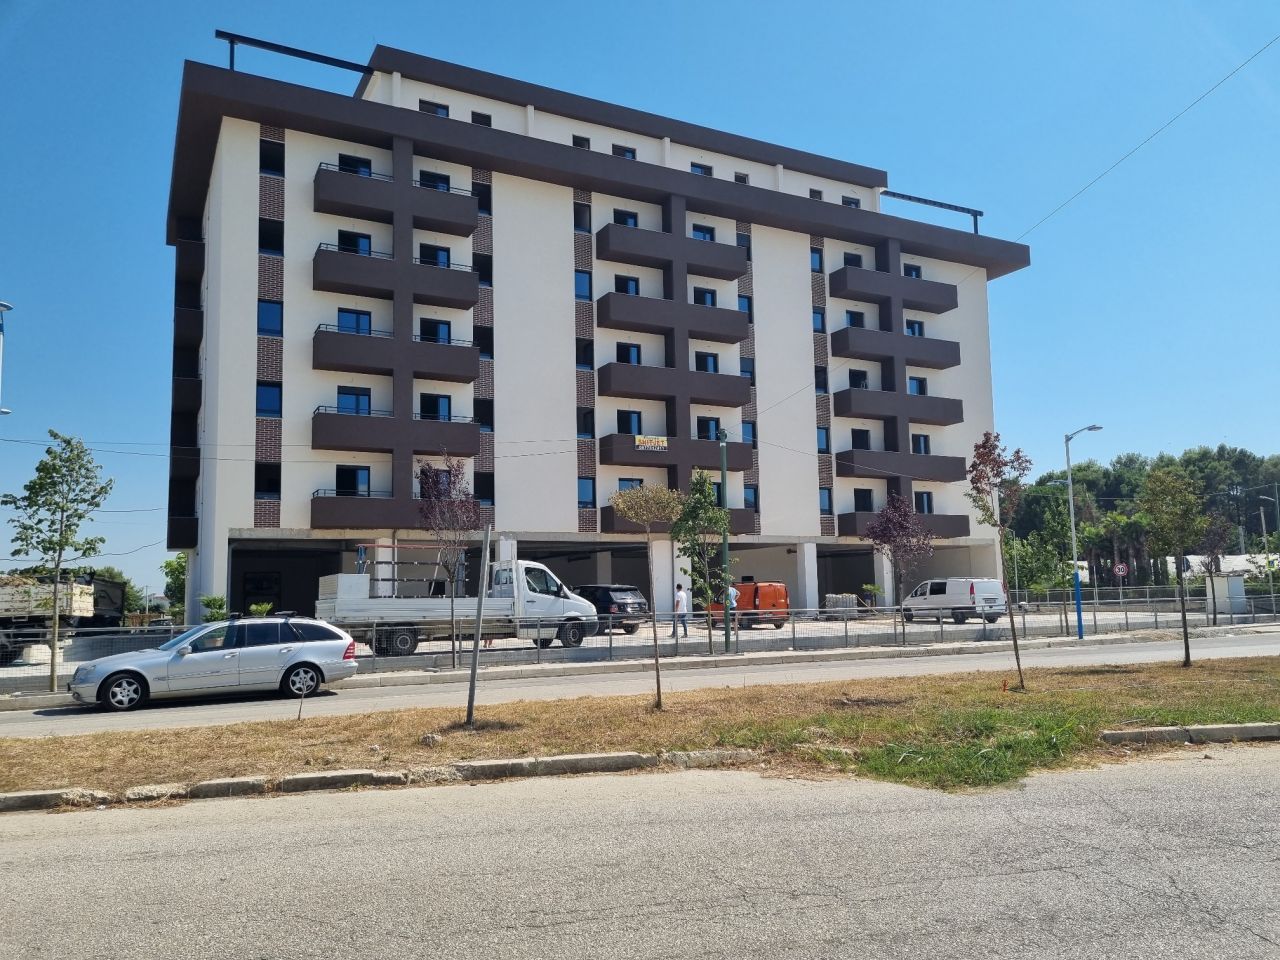 Apartament Per Shitje Ne Mali Robit Golem Durres Shqiperi, Ndodhet Ne Nje Zone Te Qete, Prane Plazhit